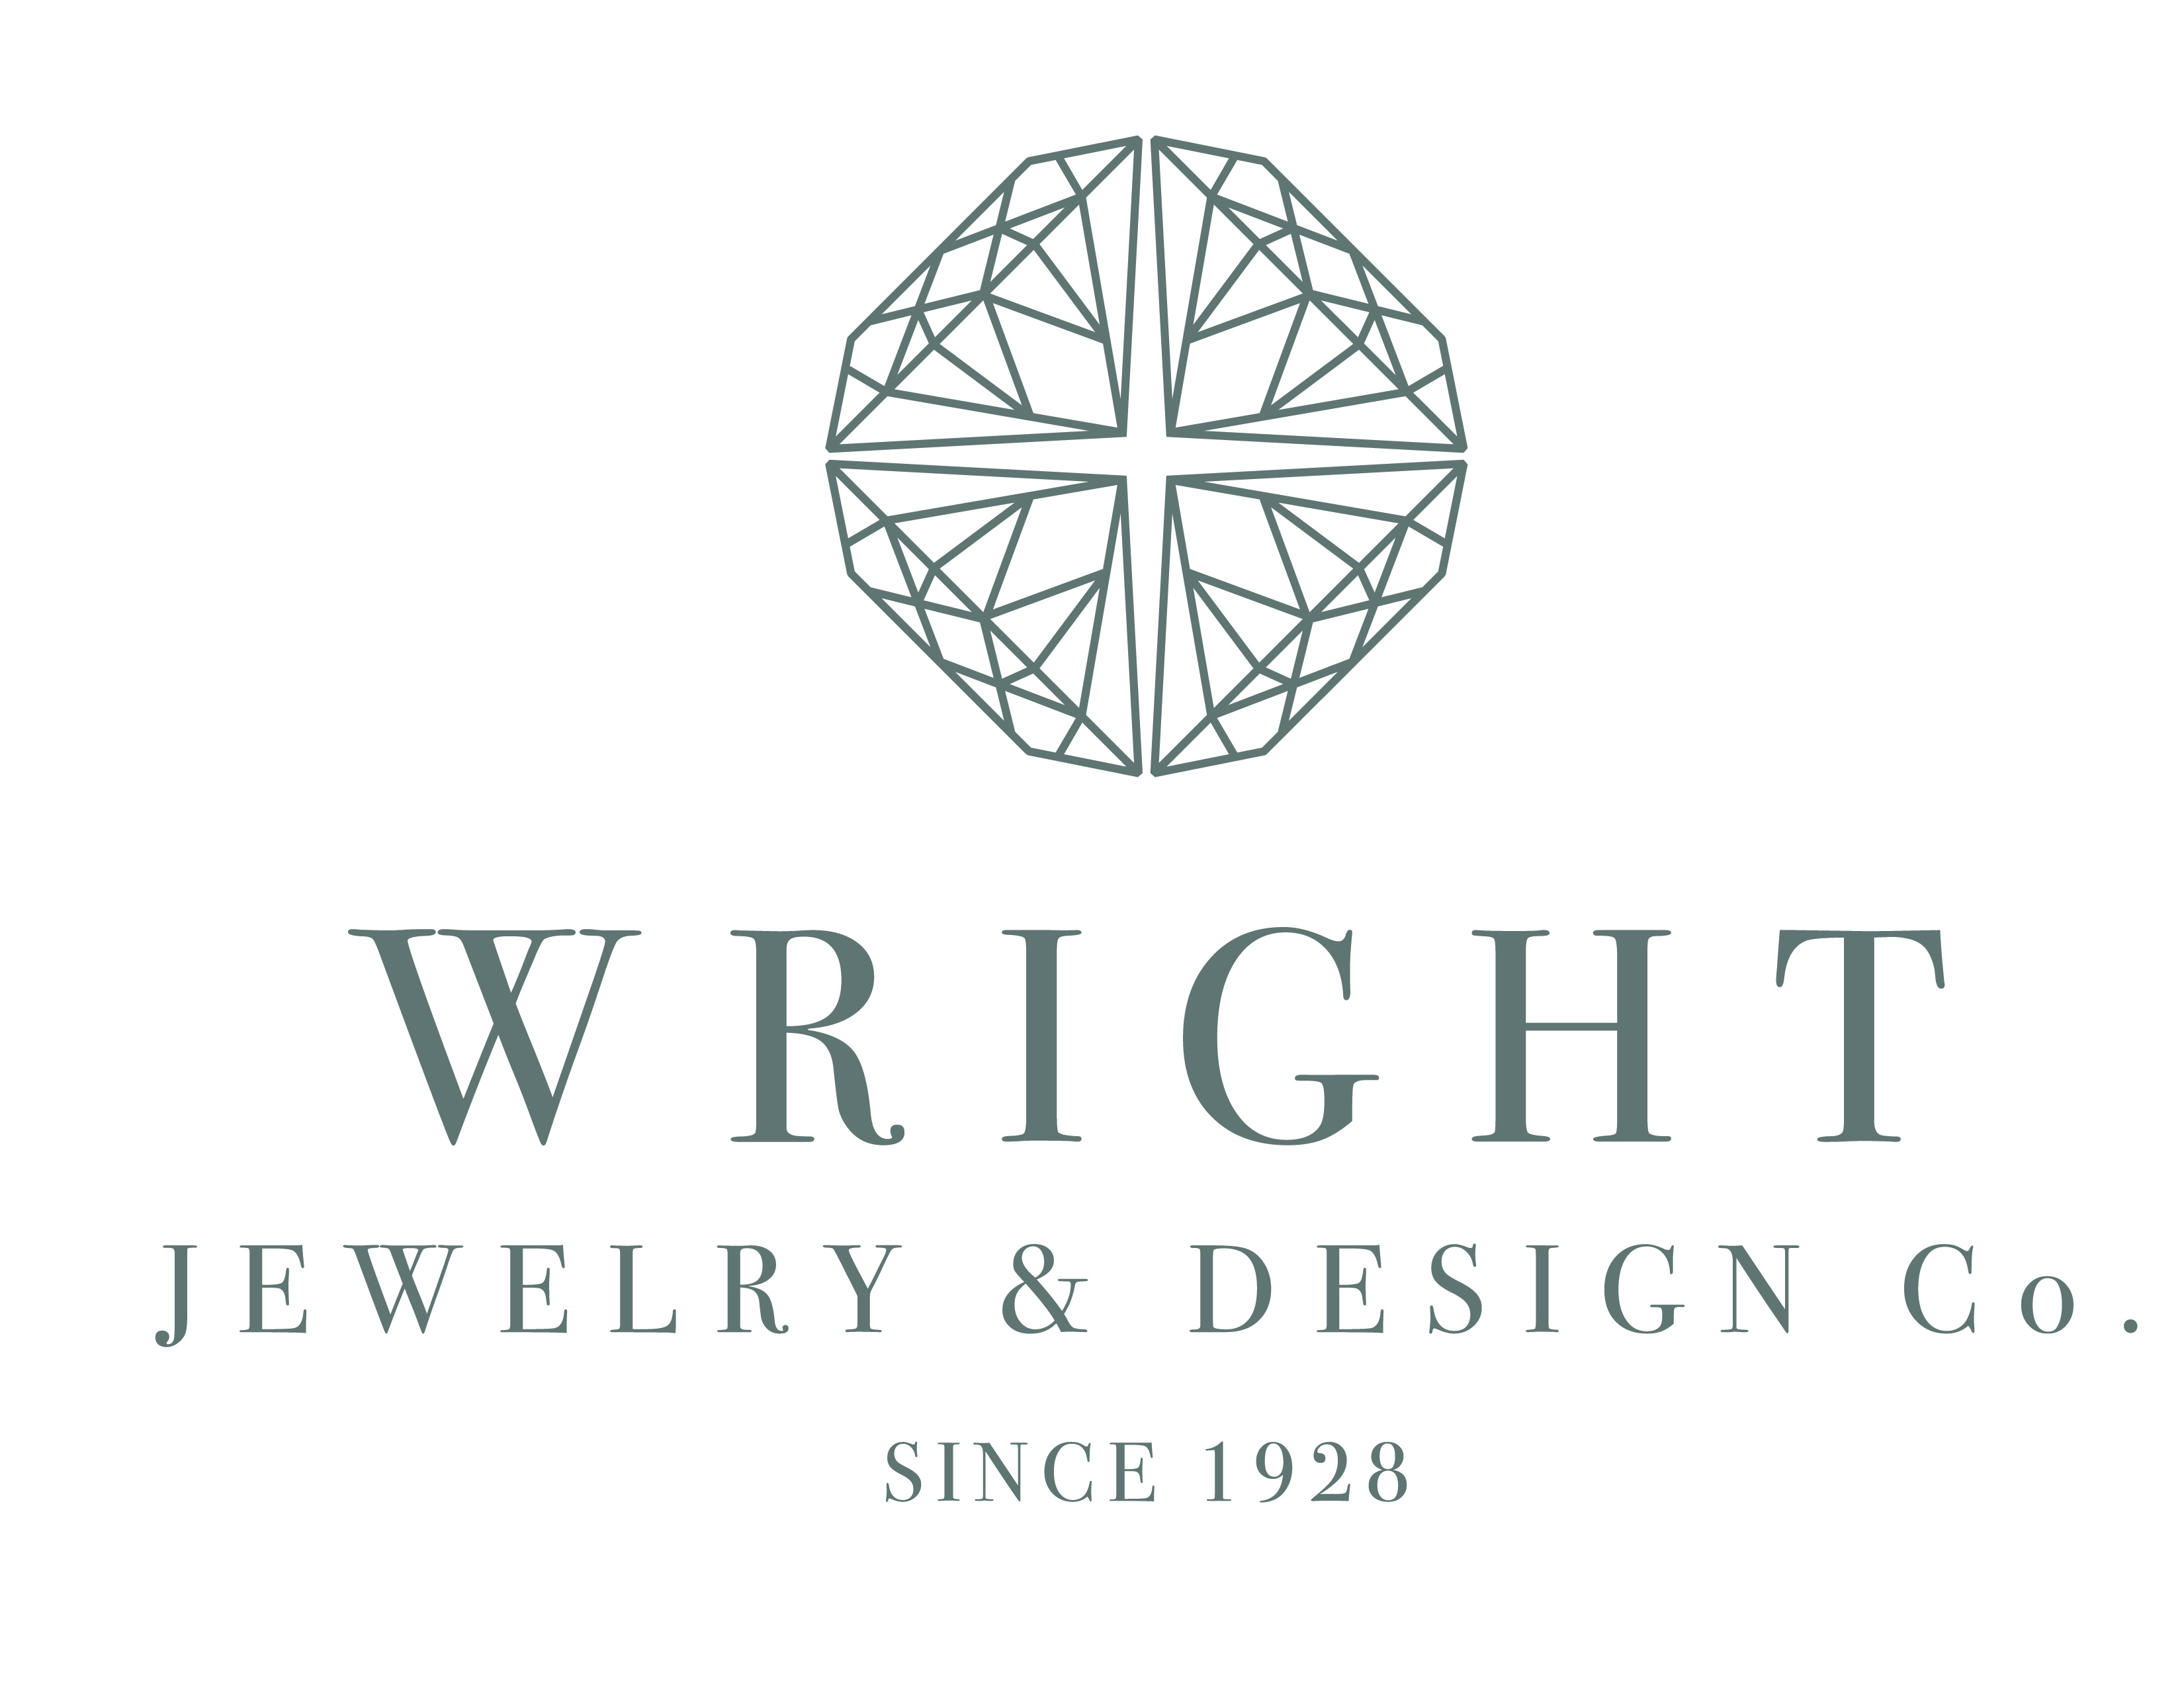 Wright Jewelers & Design